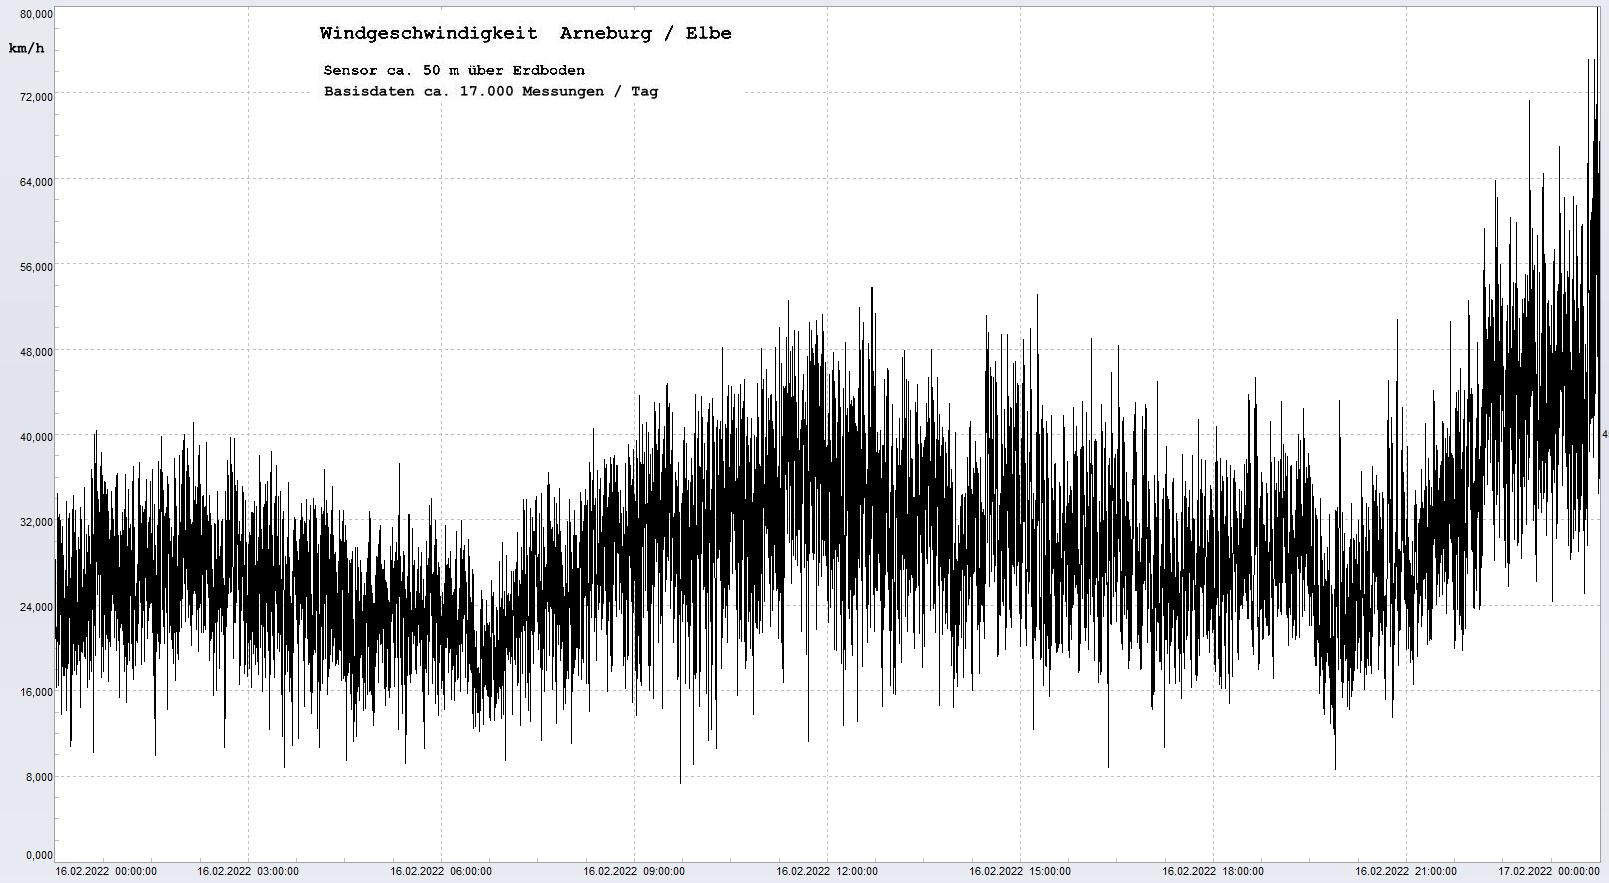 Arneburg Tages-Diagramm Winddaten, 16.02.2022
  Diagramm, Sensor auf Gebude, ca. 50 m ber Erdboden, Basis: 5s-Aufzeichnung